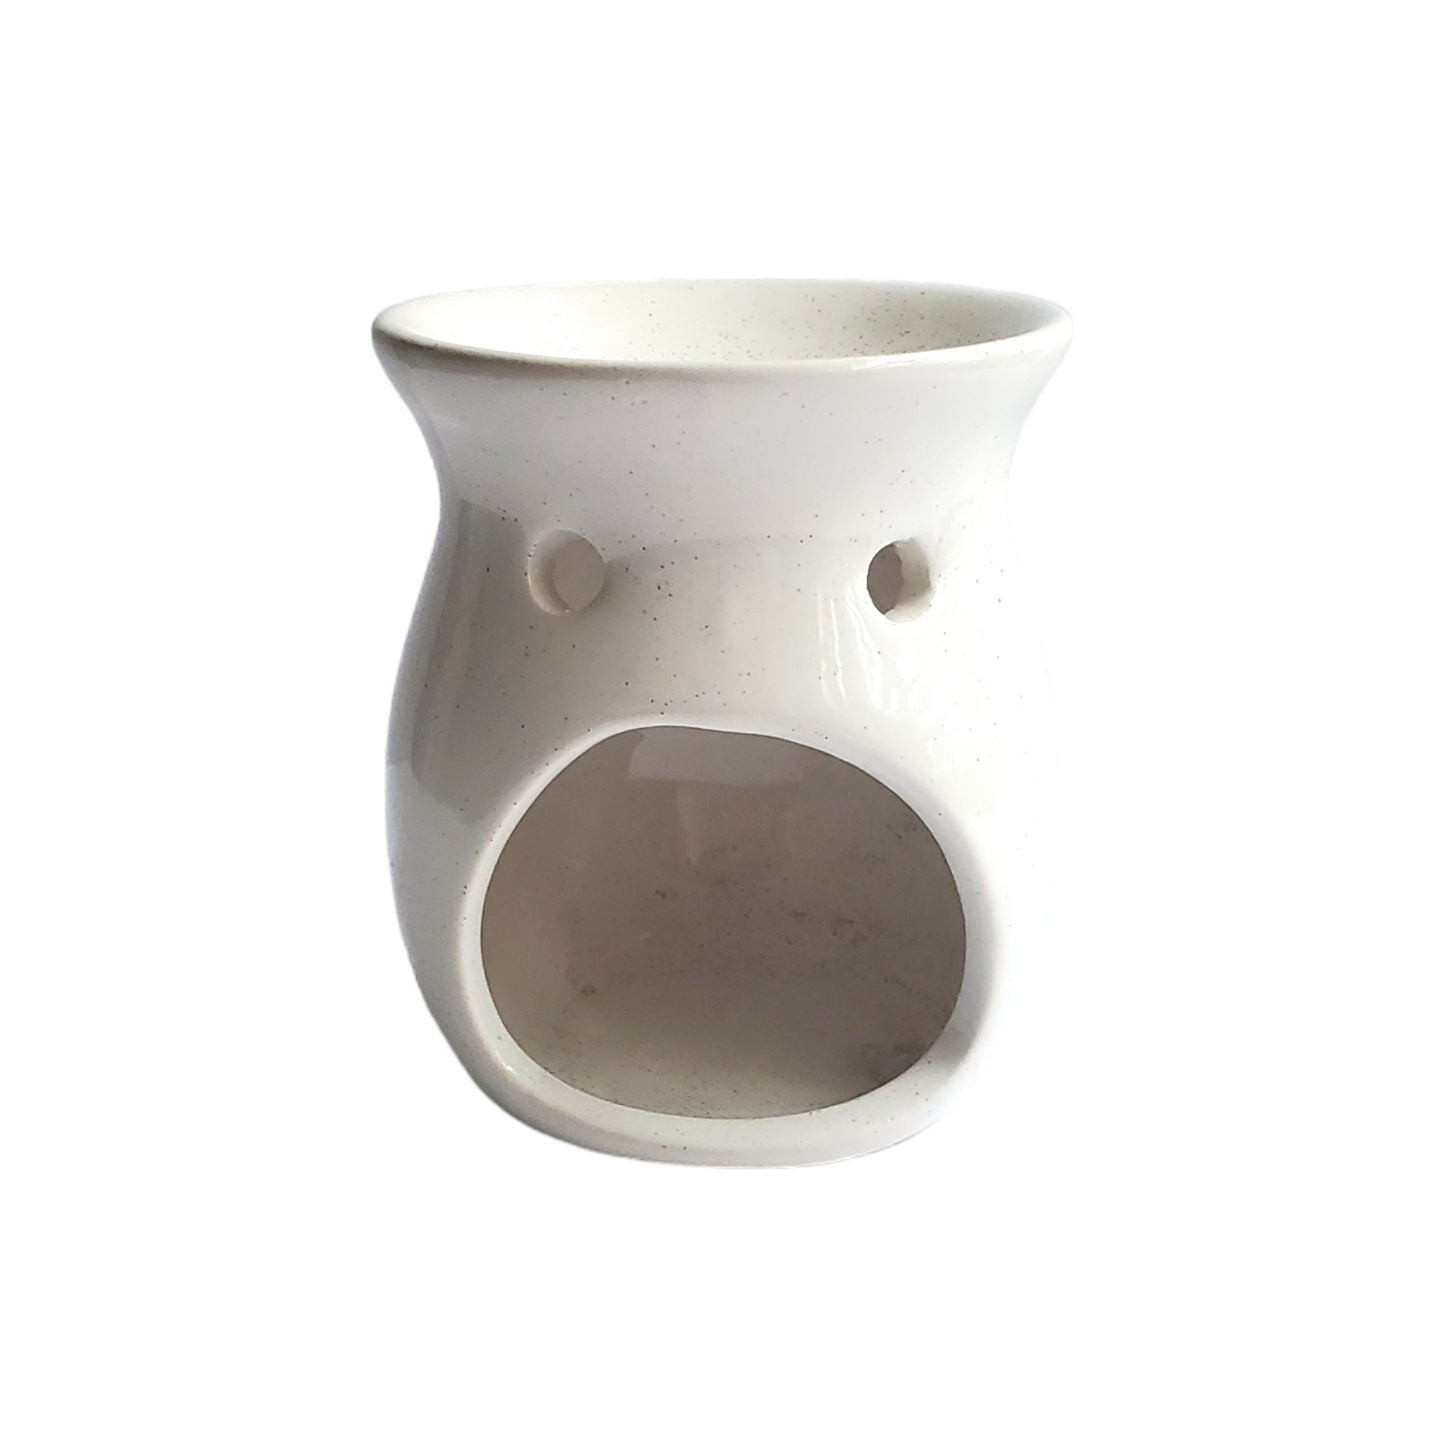 White Speckled Ceramic Tea Light Warmer